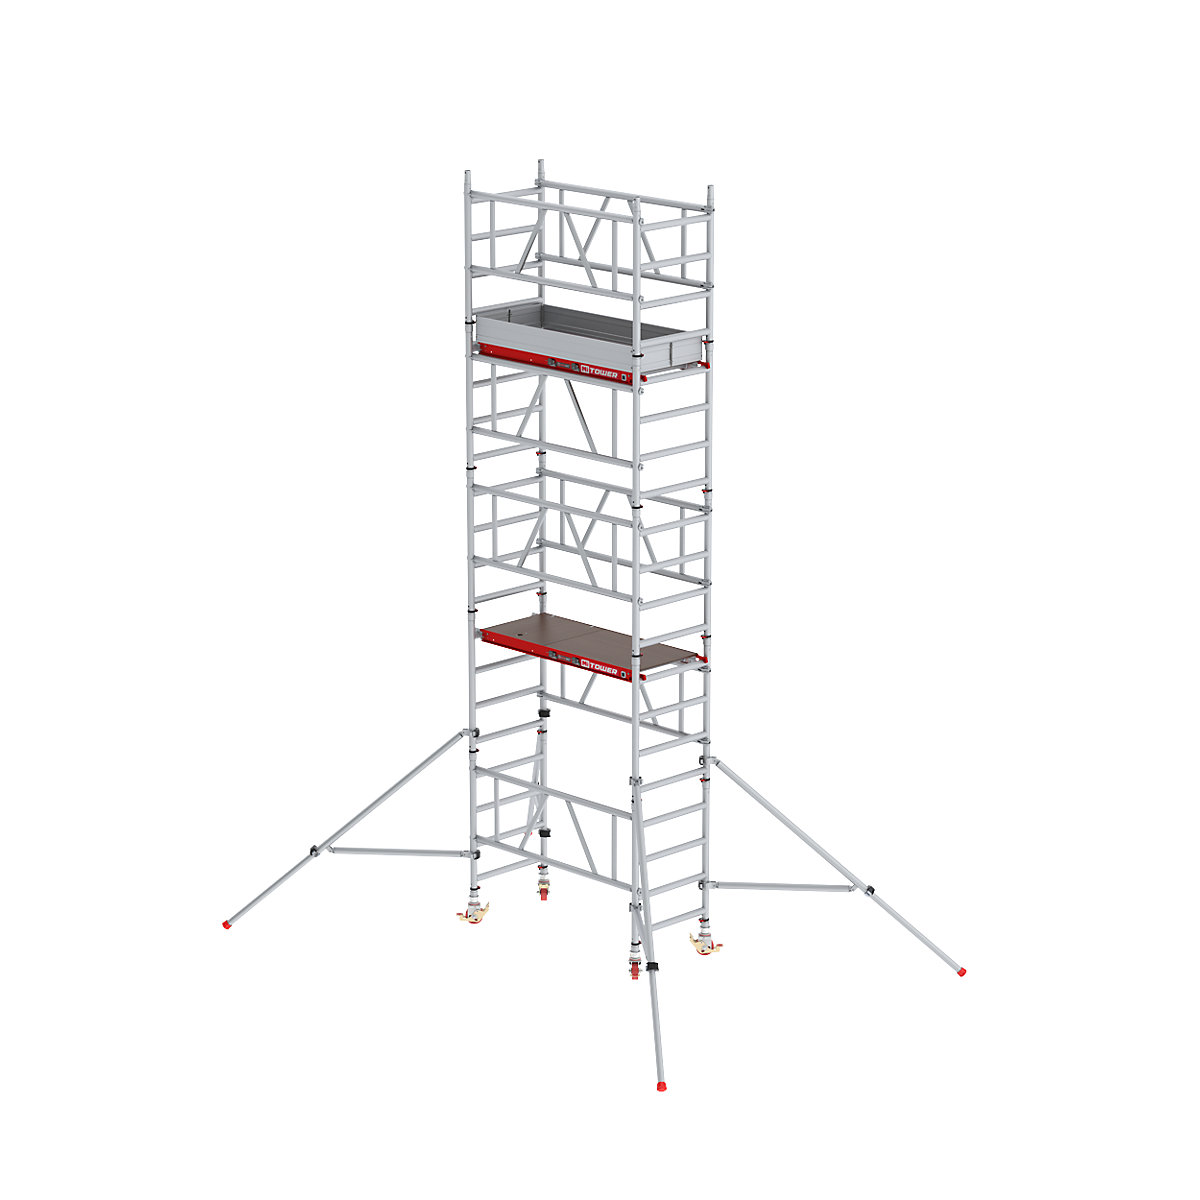 Andaime móvel de montagem rápida MiTOWER Plus – Altrex, plataforma de madeira, altura de trabalho 6 m-4